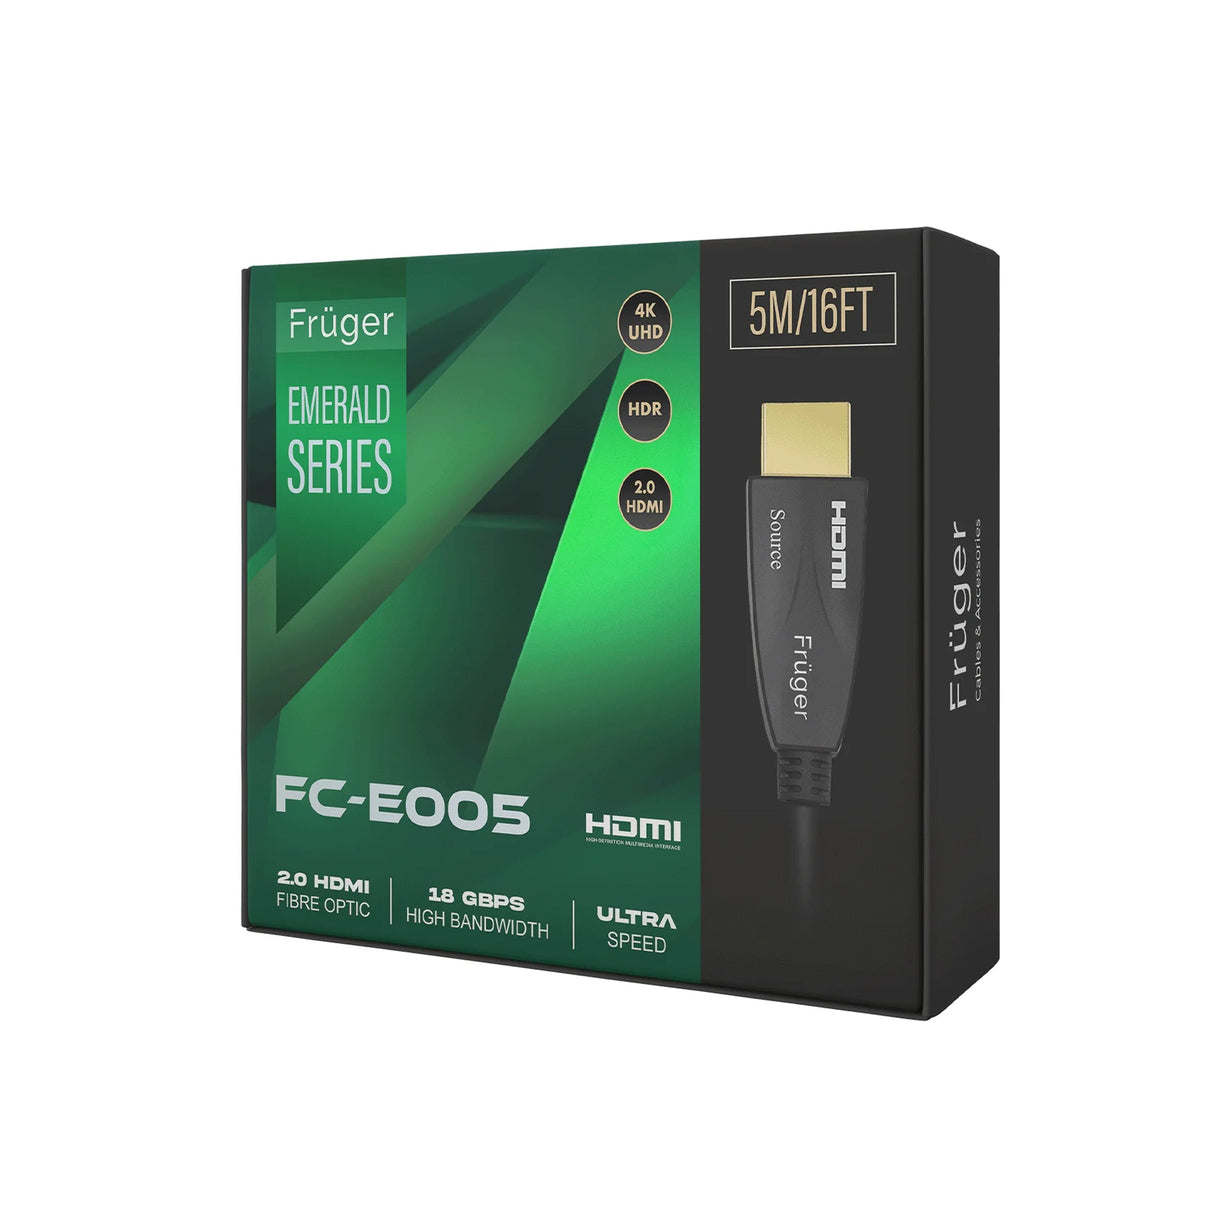 Fruger Emerald Series FC-E010 - Optic Fibre 4K Hdmi AOC Cable (10 Meters)